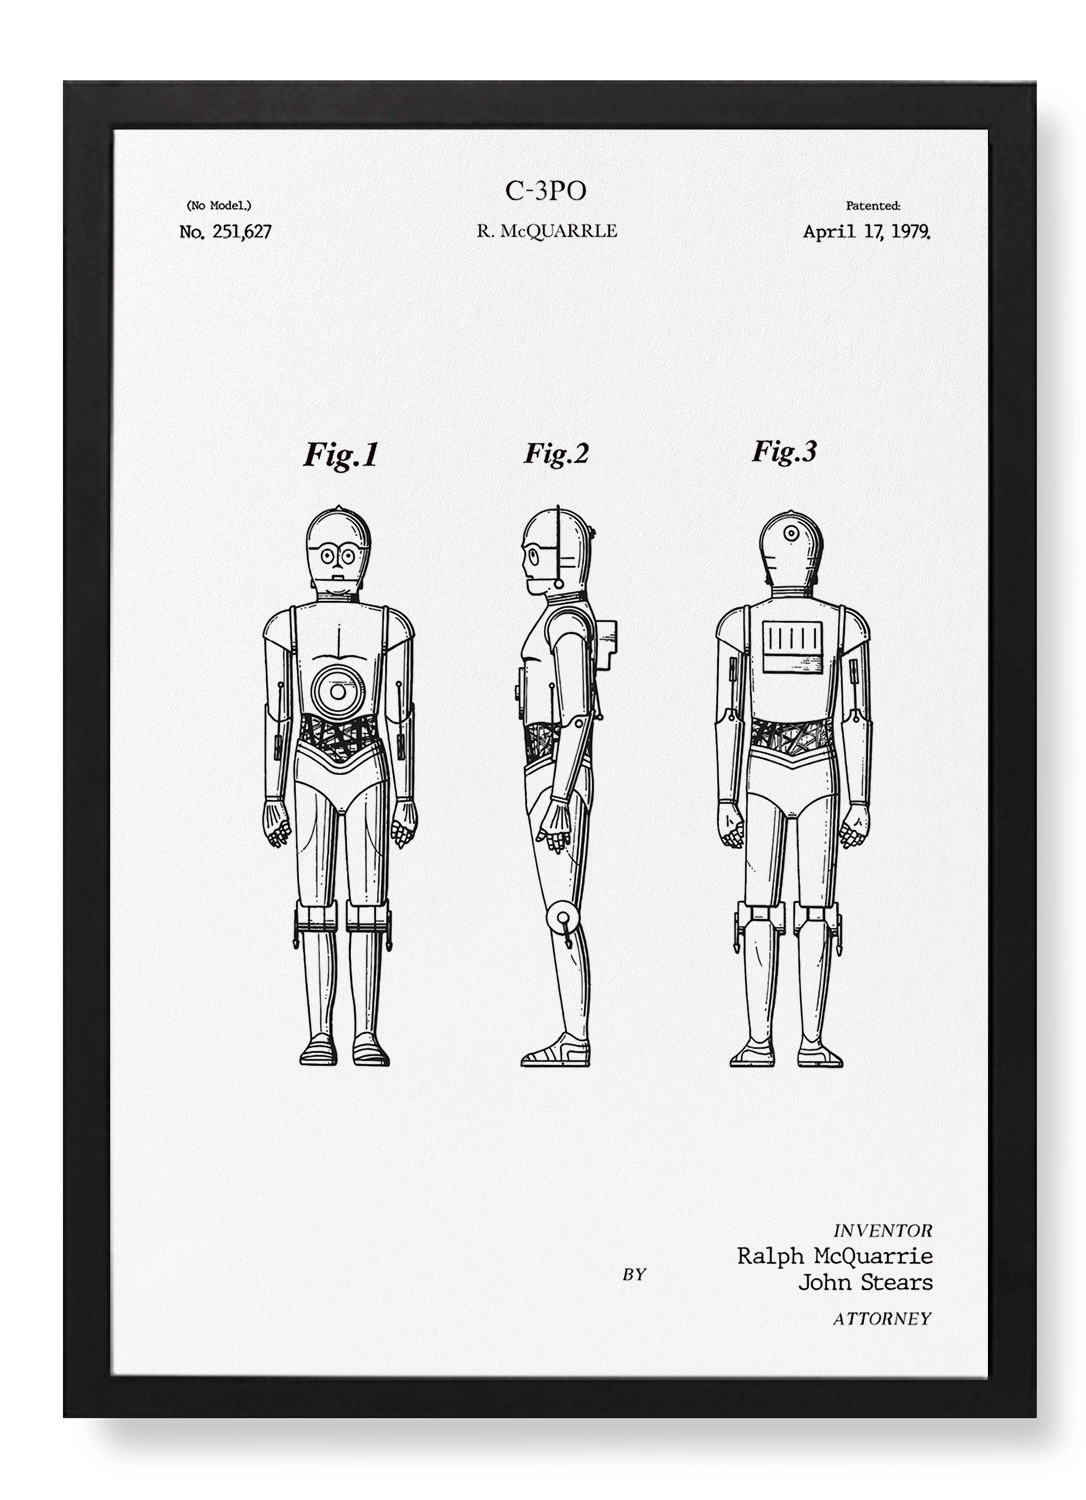 PATENT OF C-3PO (1979)